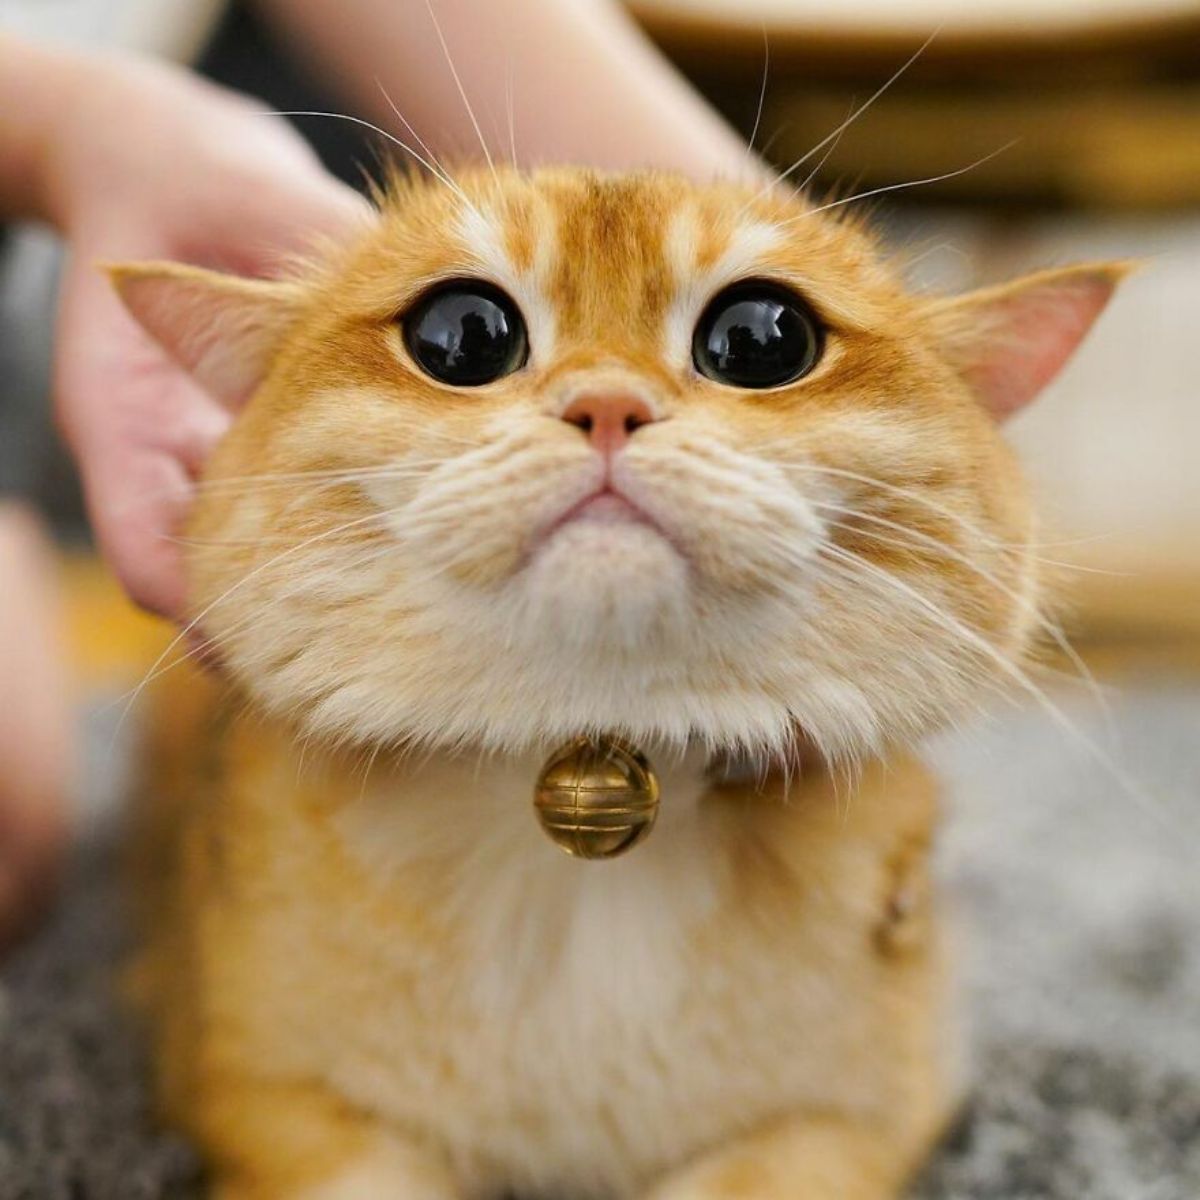 orange cat with large black eyes looking like baby yoda